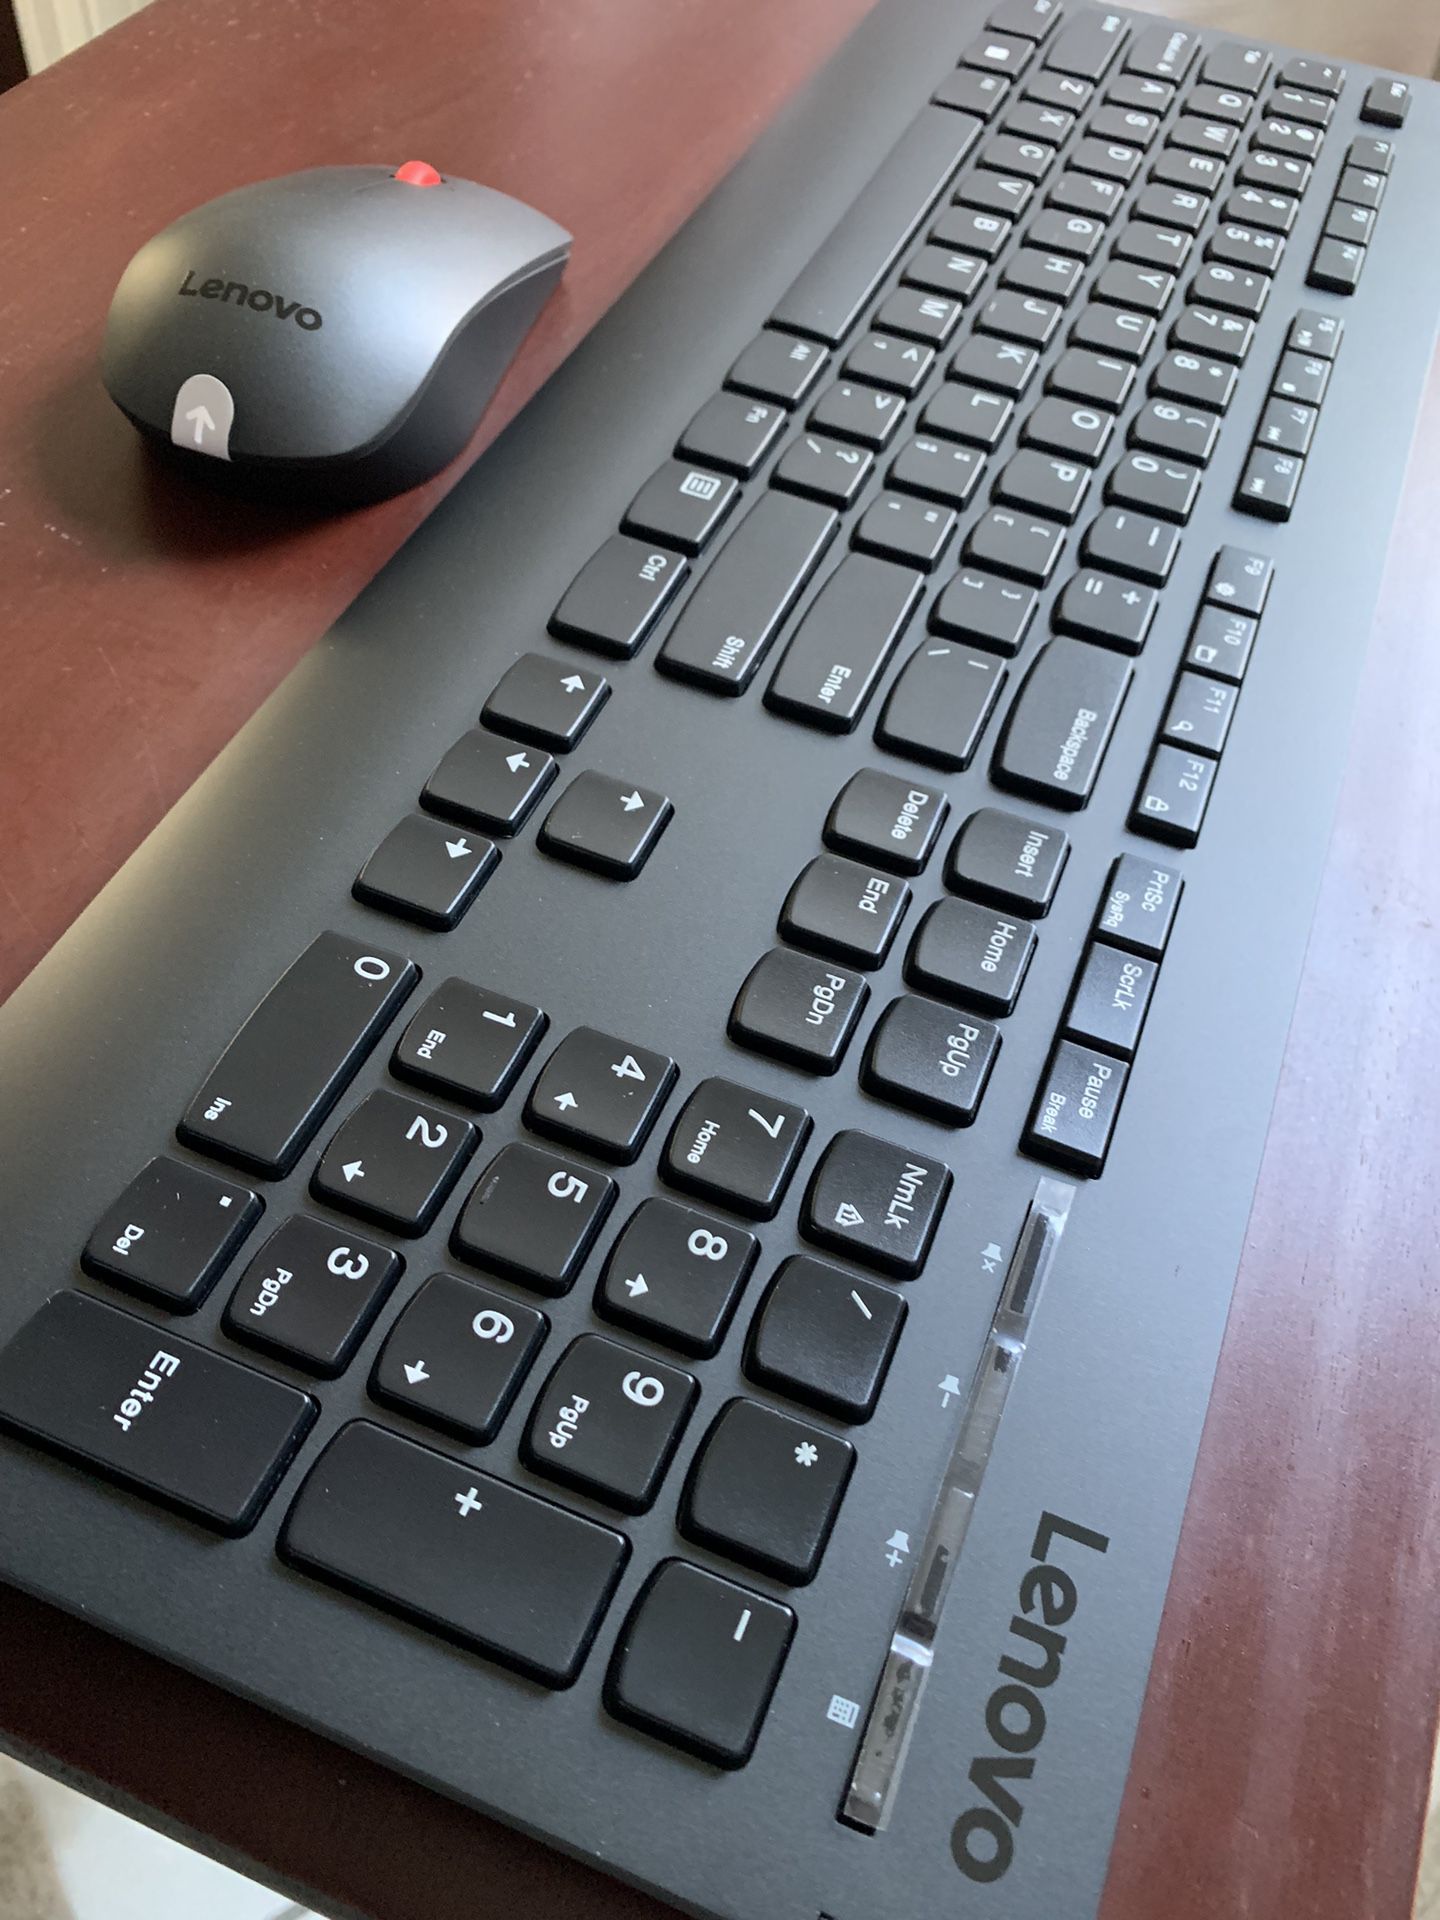 Wireless Keyboard + Mouse